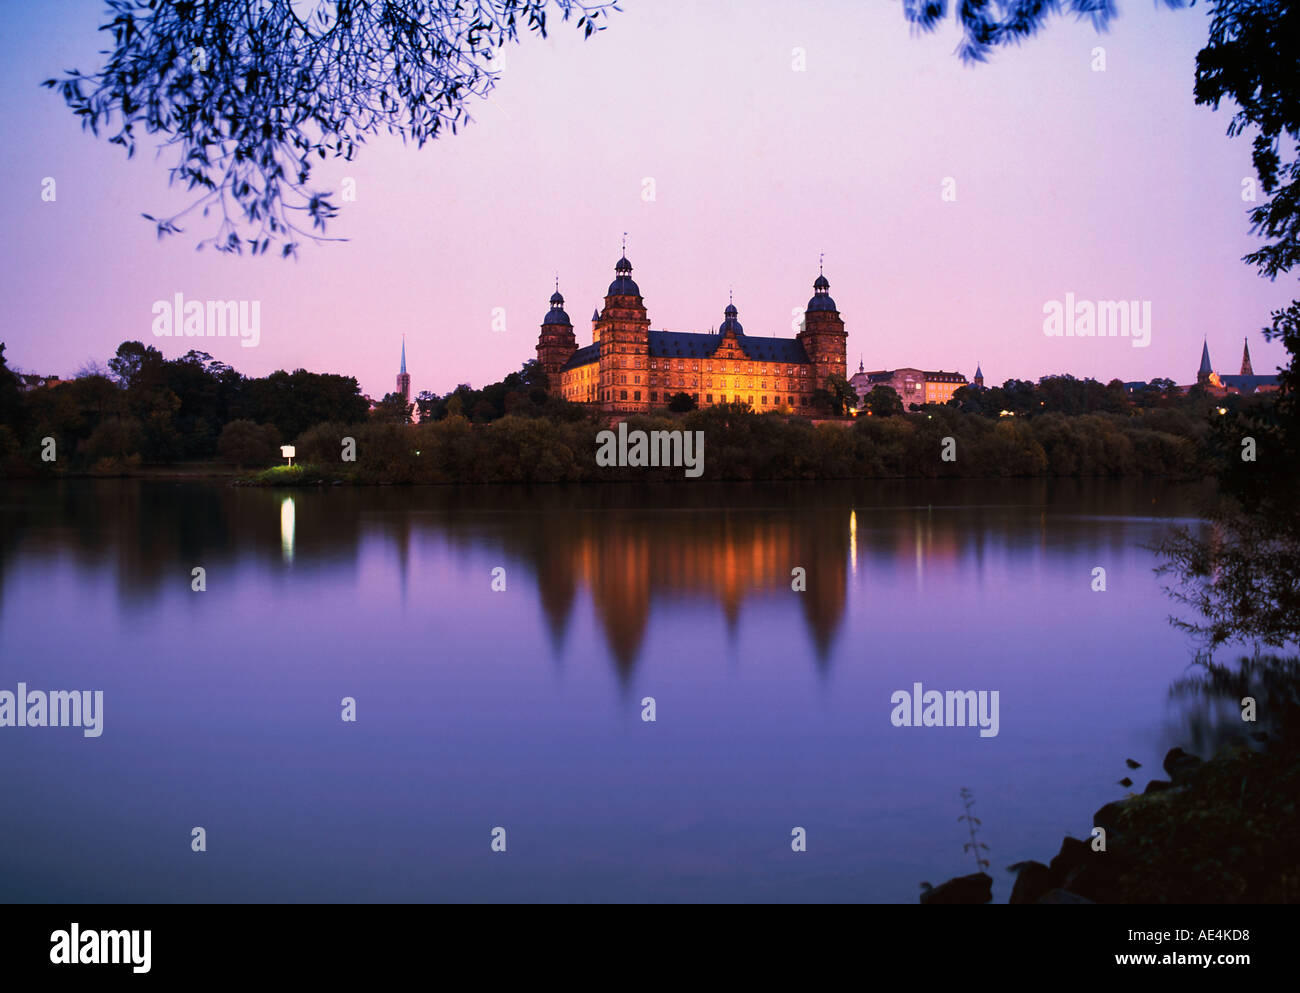 Le château de Johannisburg Aschaffenburg Allemagne main coucher du soleil Banque D'Images